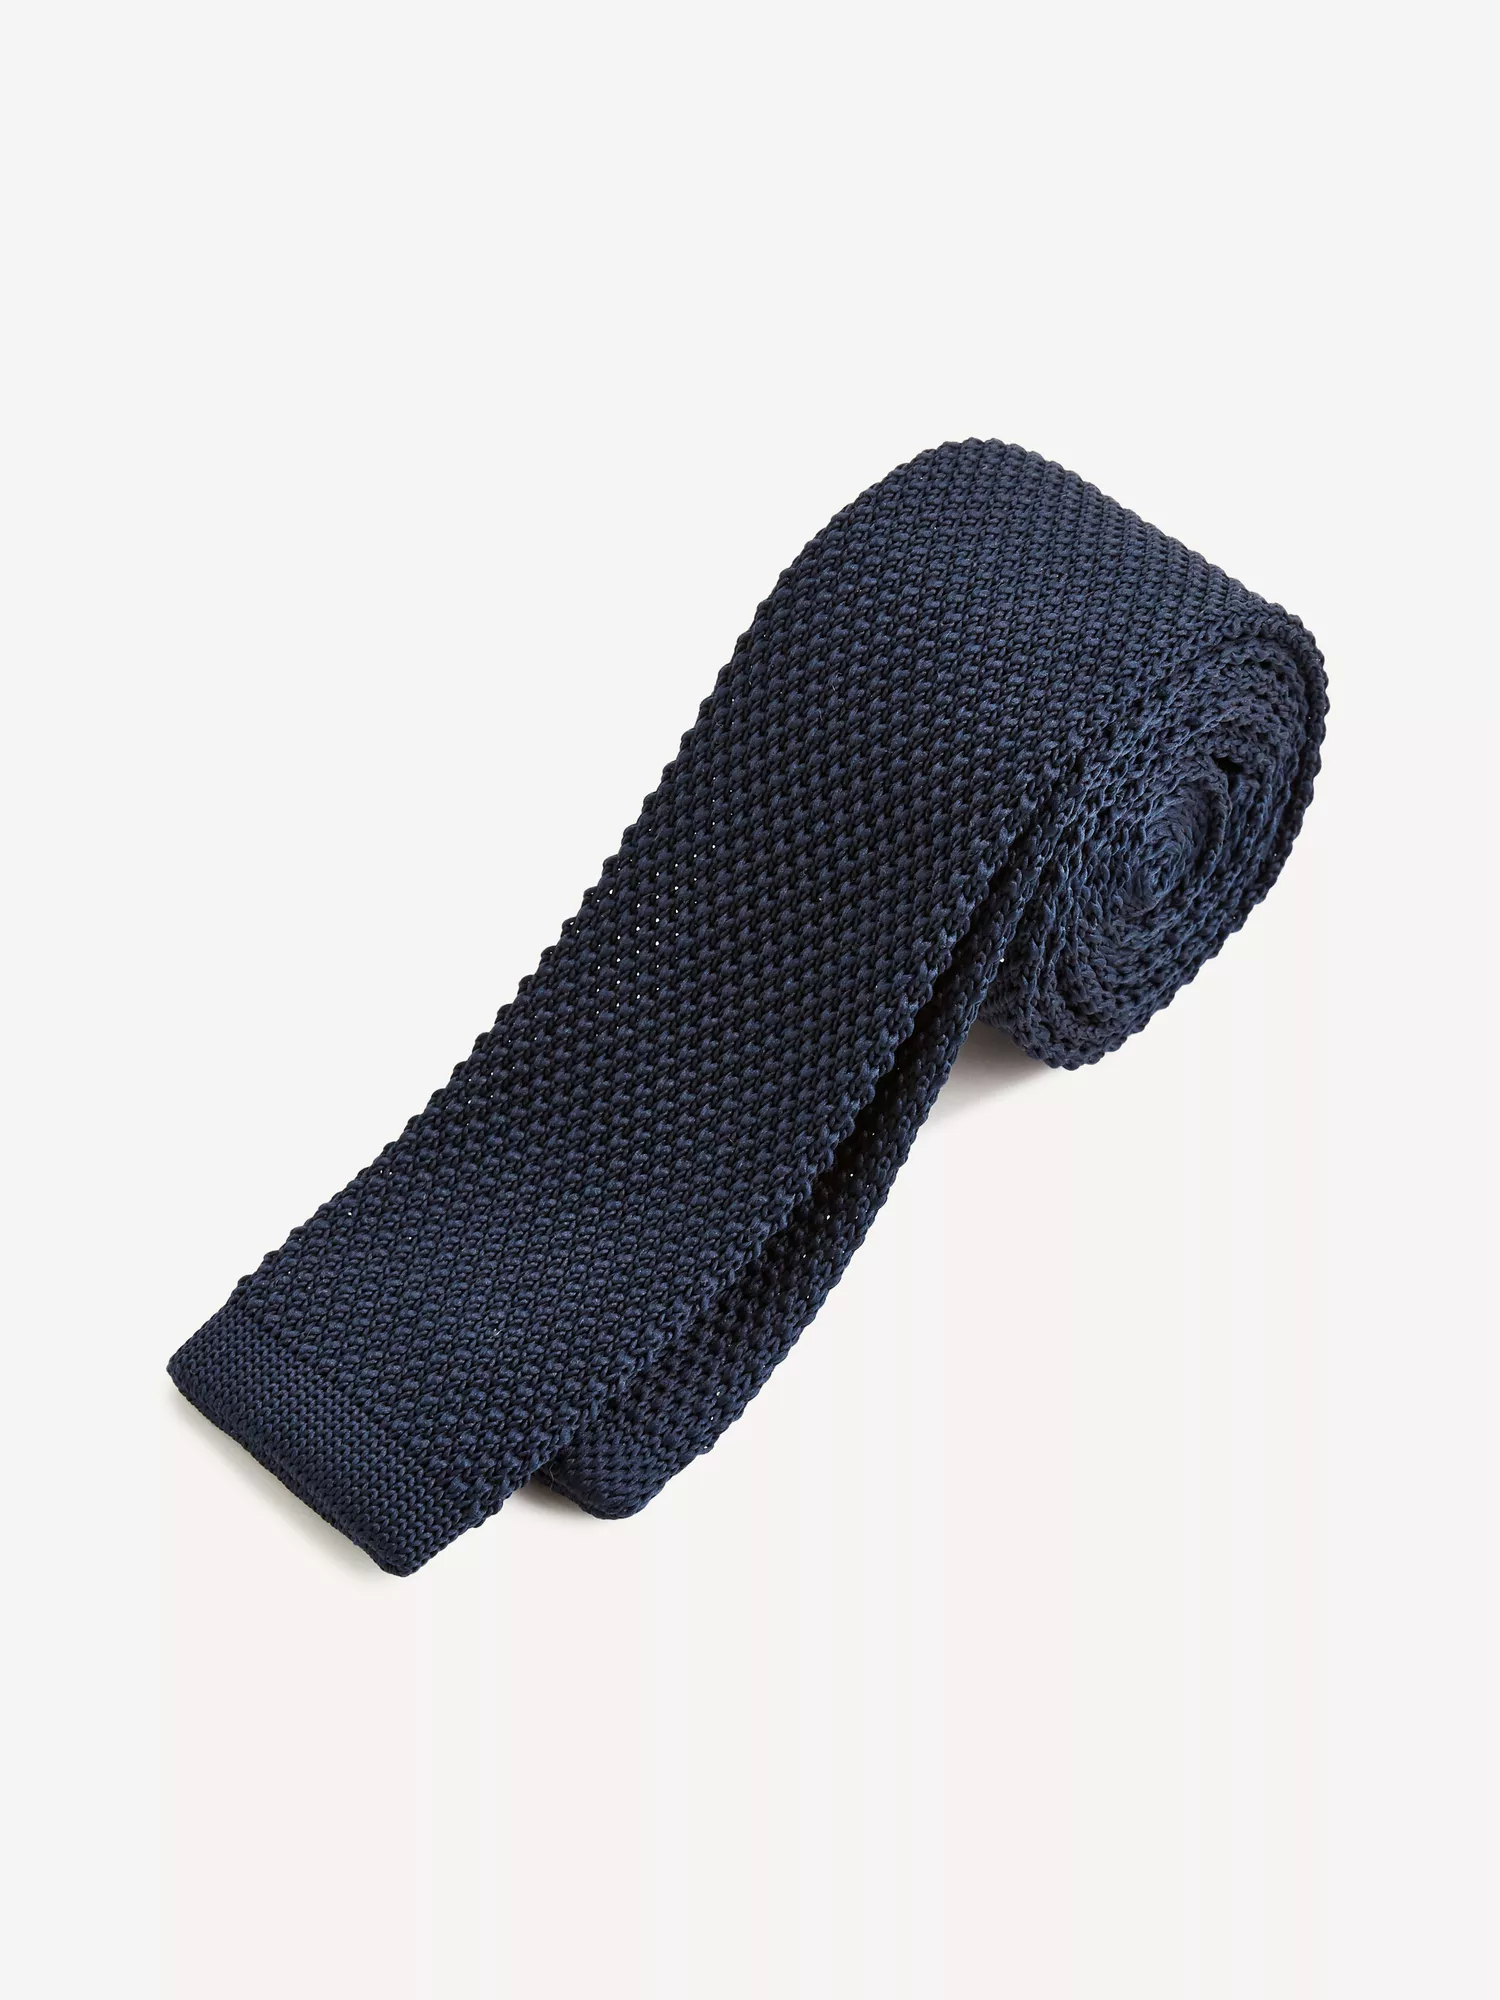 Pletená kravata Citieknit (1)